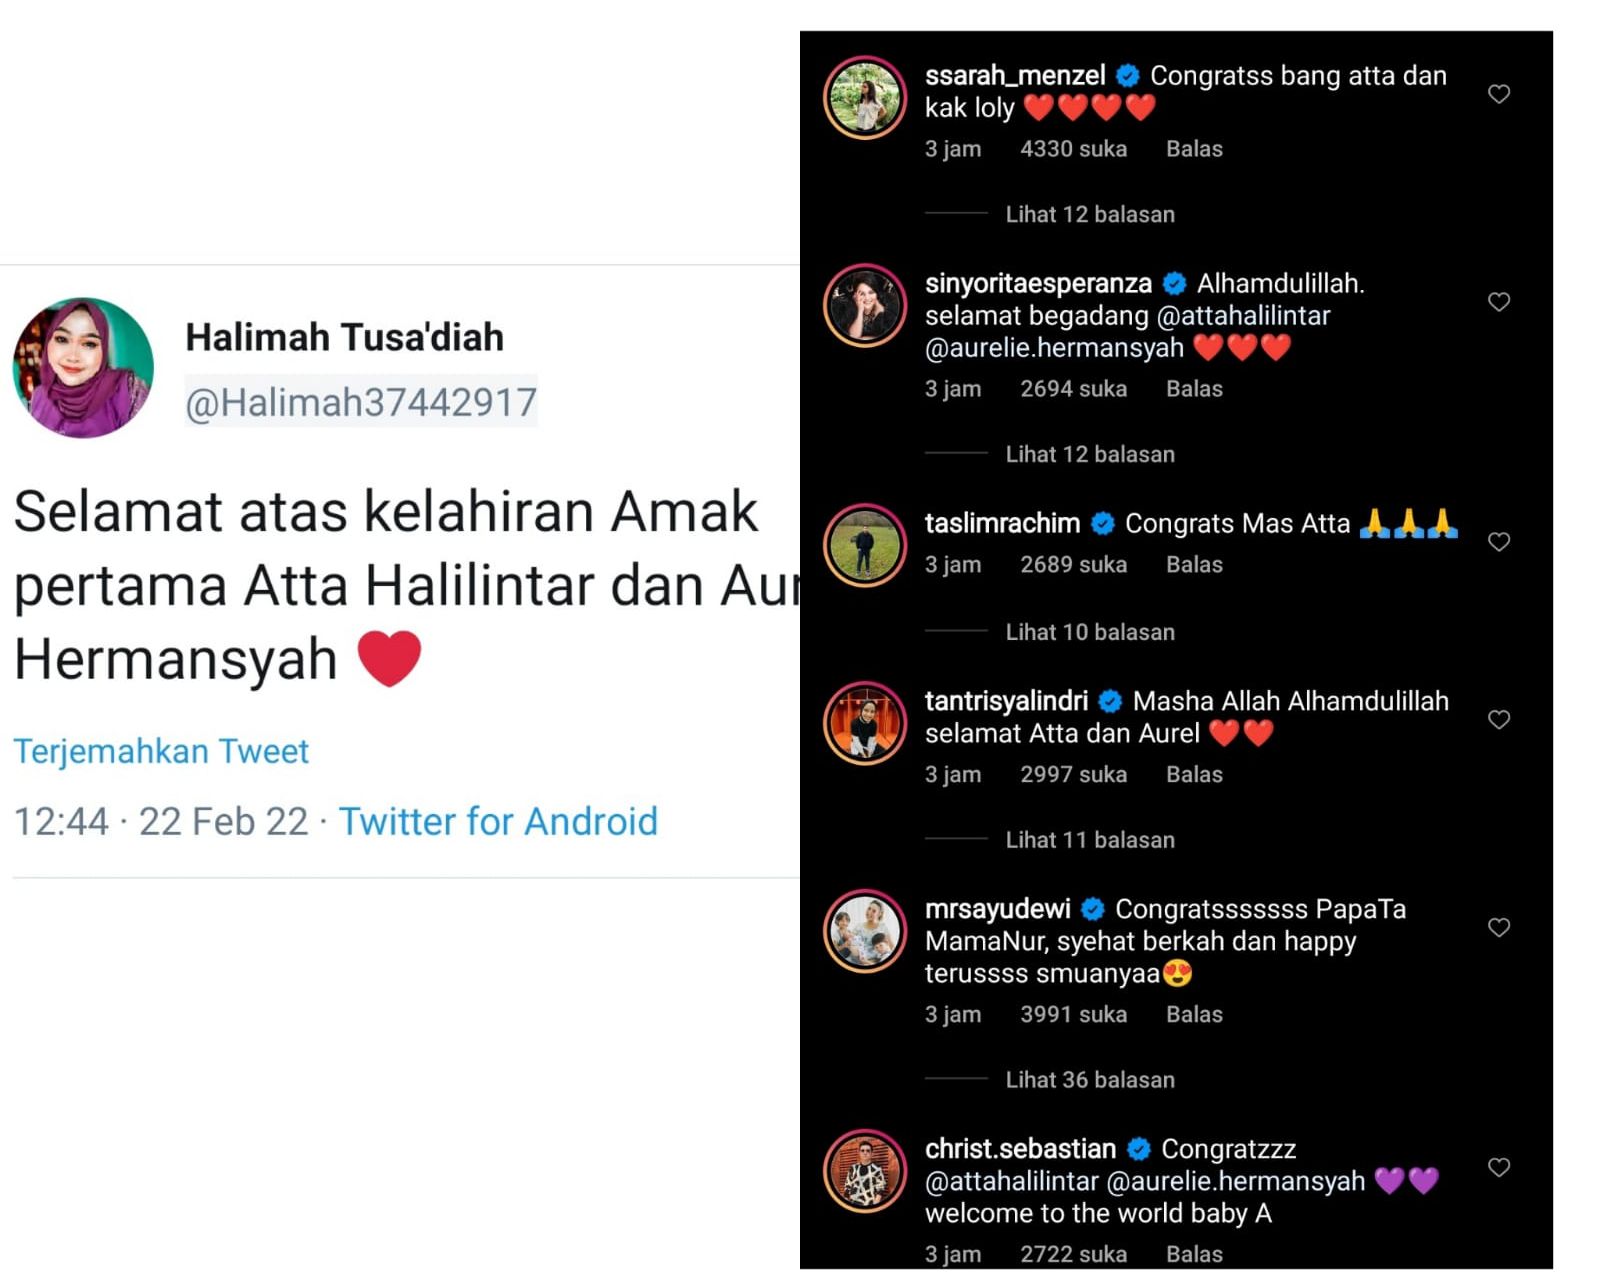 Ucapan selamat dari fans dan selebriti tanah air untuk Atta Halilintar dan Aurel Hermansyah